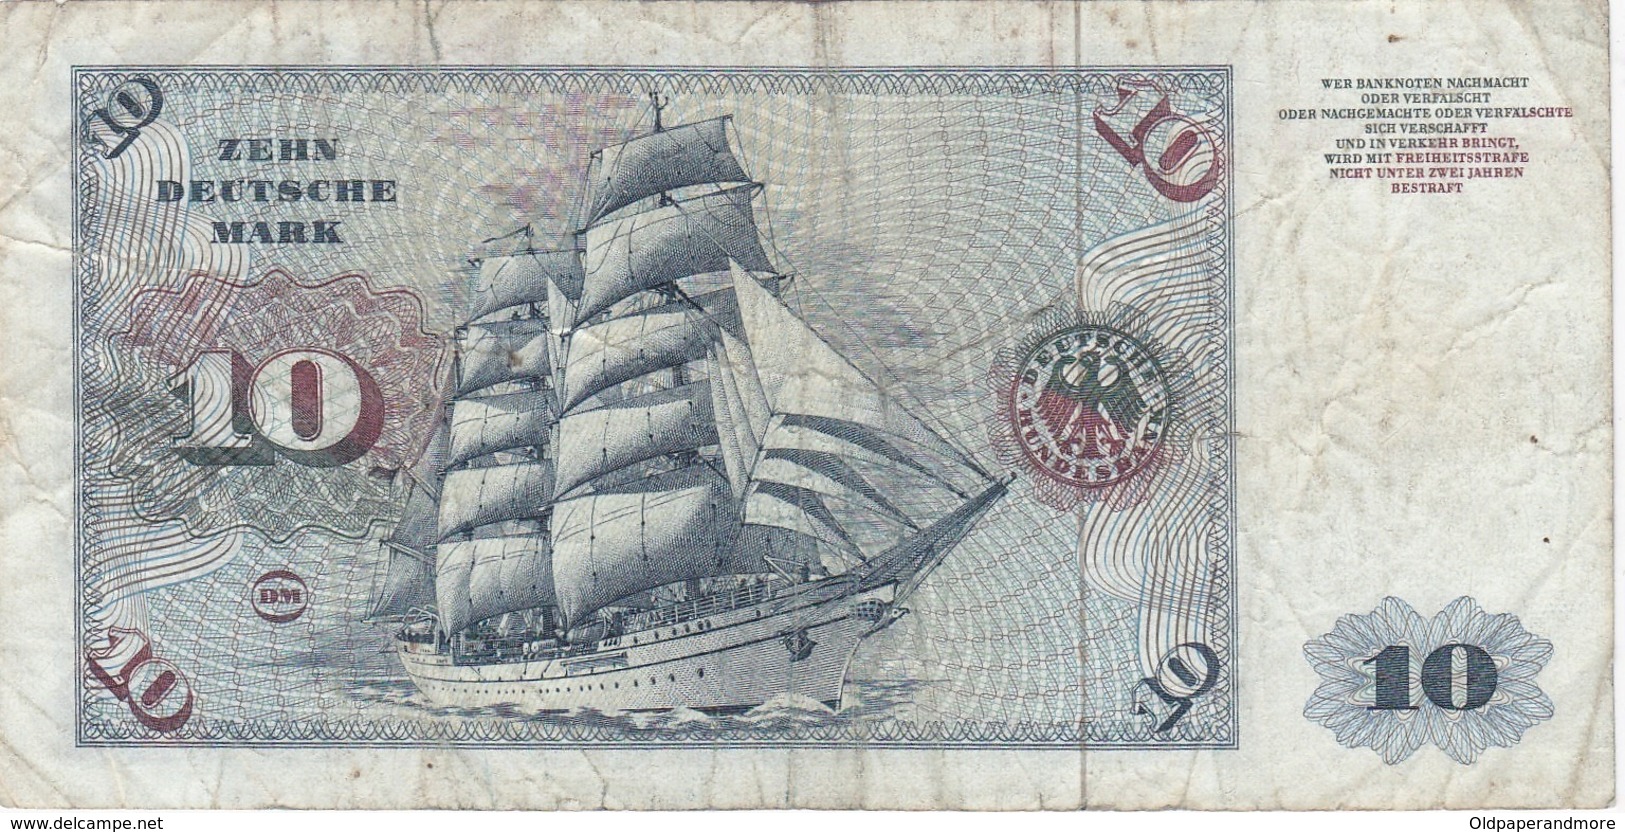 GERMANY BANKNOTE - 10 DEUTSCHE MARK 1977 - 10 Deutsche Mark